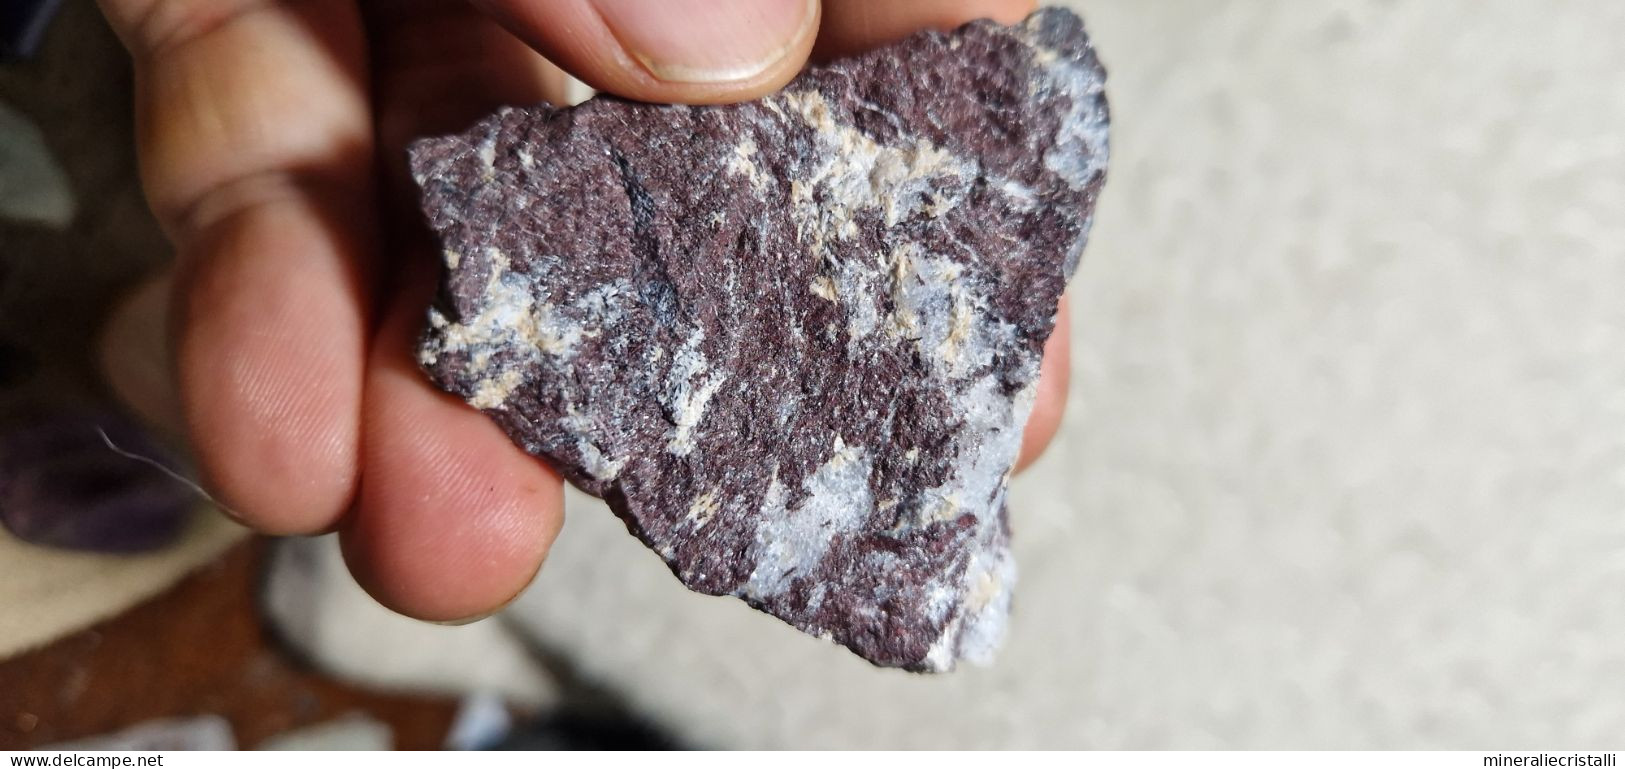 Piemontite Tremolite 42,73 Gr San Marcel Valle D'Aosta Italia - Minerals